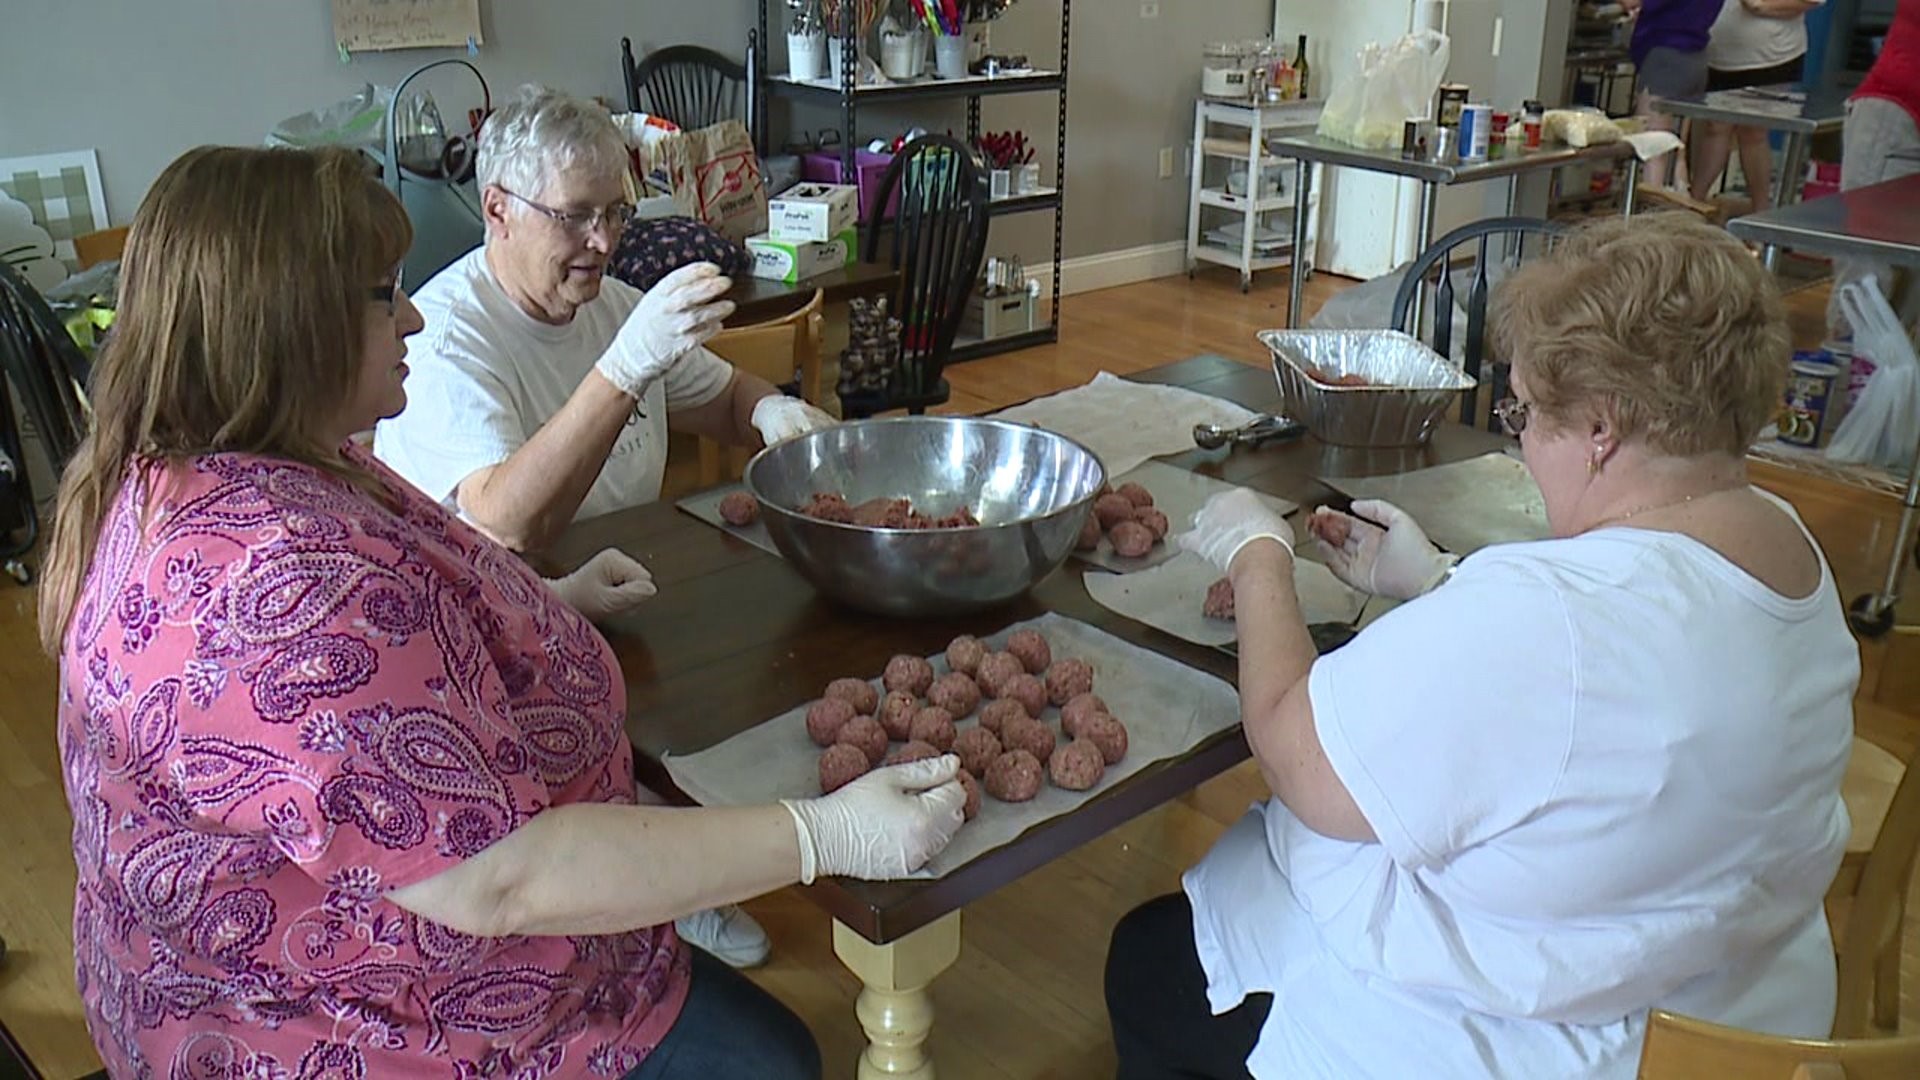 Cooking up Meatballs to Help Pets in Scranton